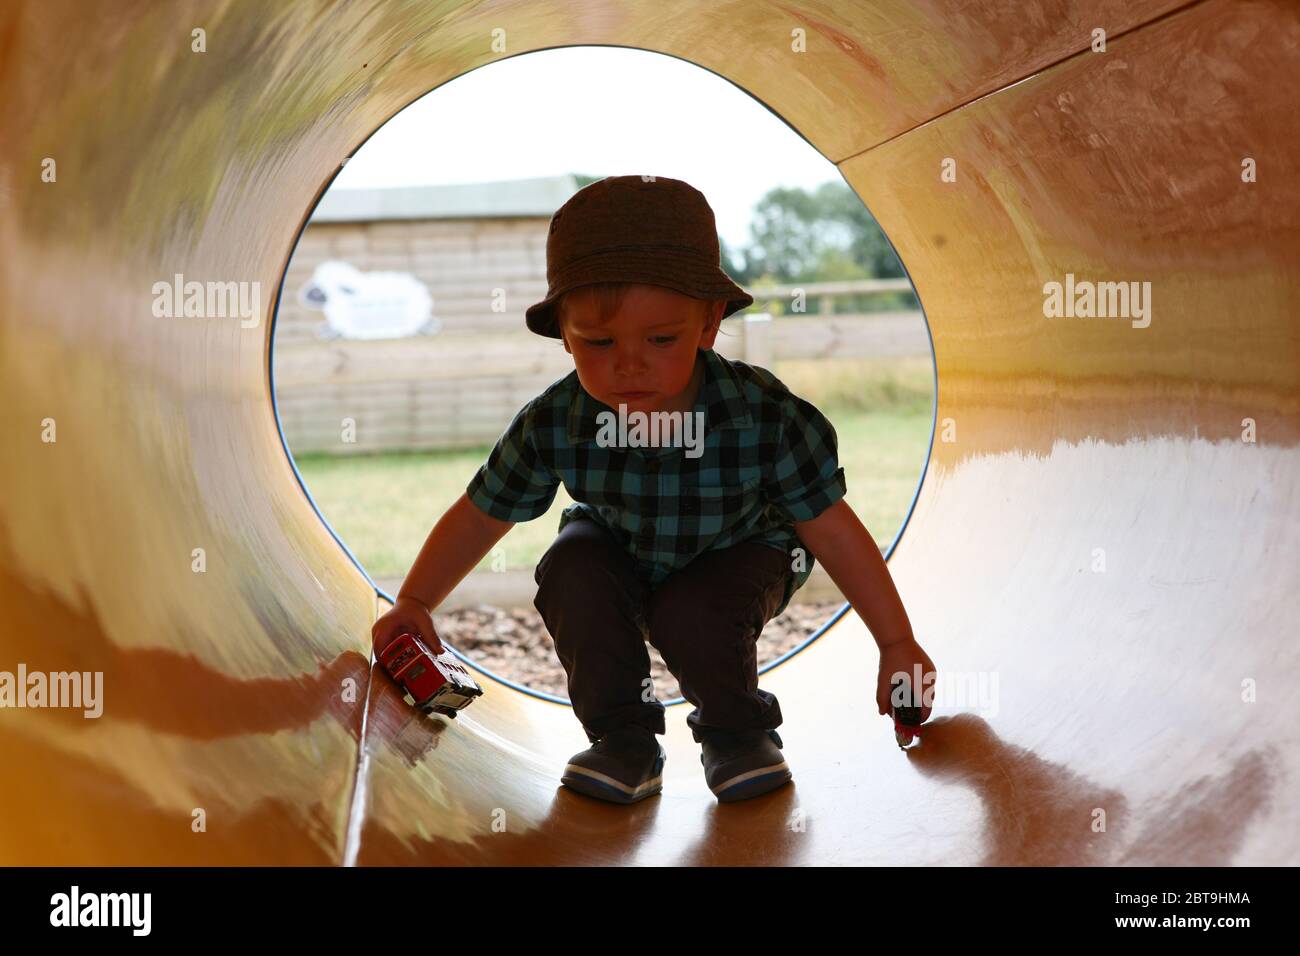 Bezaubernder kleiner Junge, 1 - 2 Jahre alt, spielt in einer Pfeife, Manor Farm Country Park, Hampshire, England, Großbritannien. MODELL FREIGEGEBEN Stockfoto